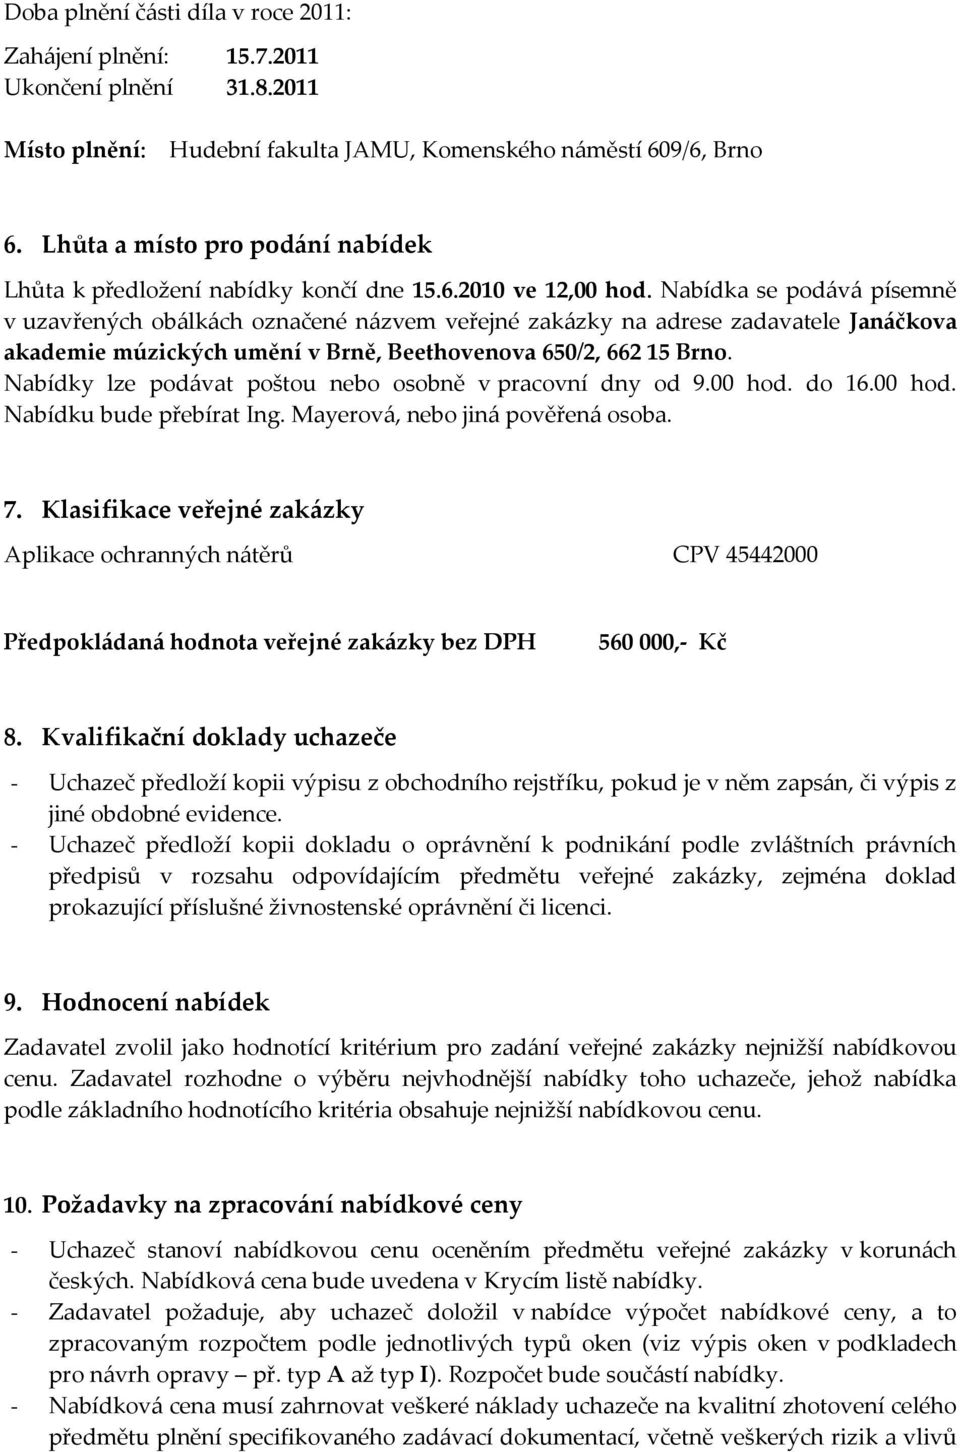 Nabídka se podává písemně v uzavřených obálkách označené názvem veřejné zakázky na adrese zadavatele Janáčkova akademie múzických umění v Brně, Beethovenova 650/2, 662 15 Brno.